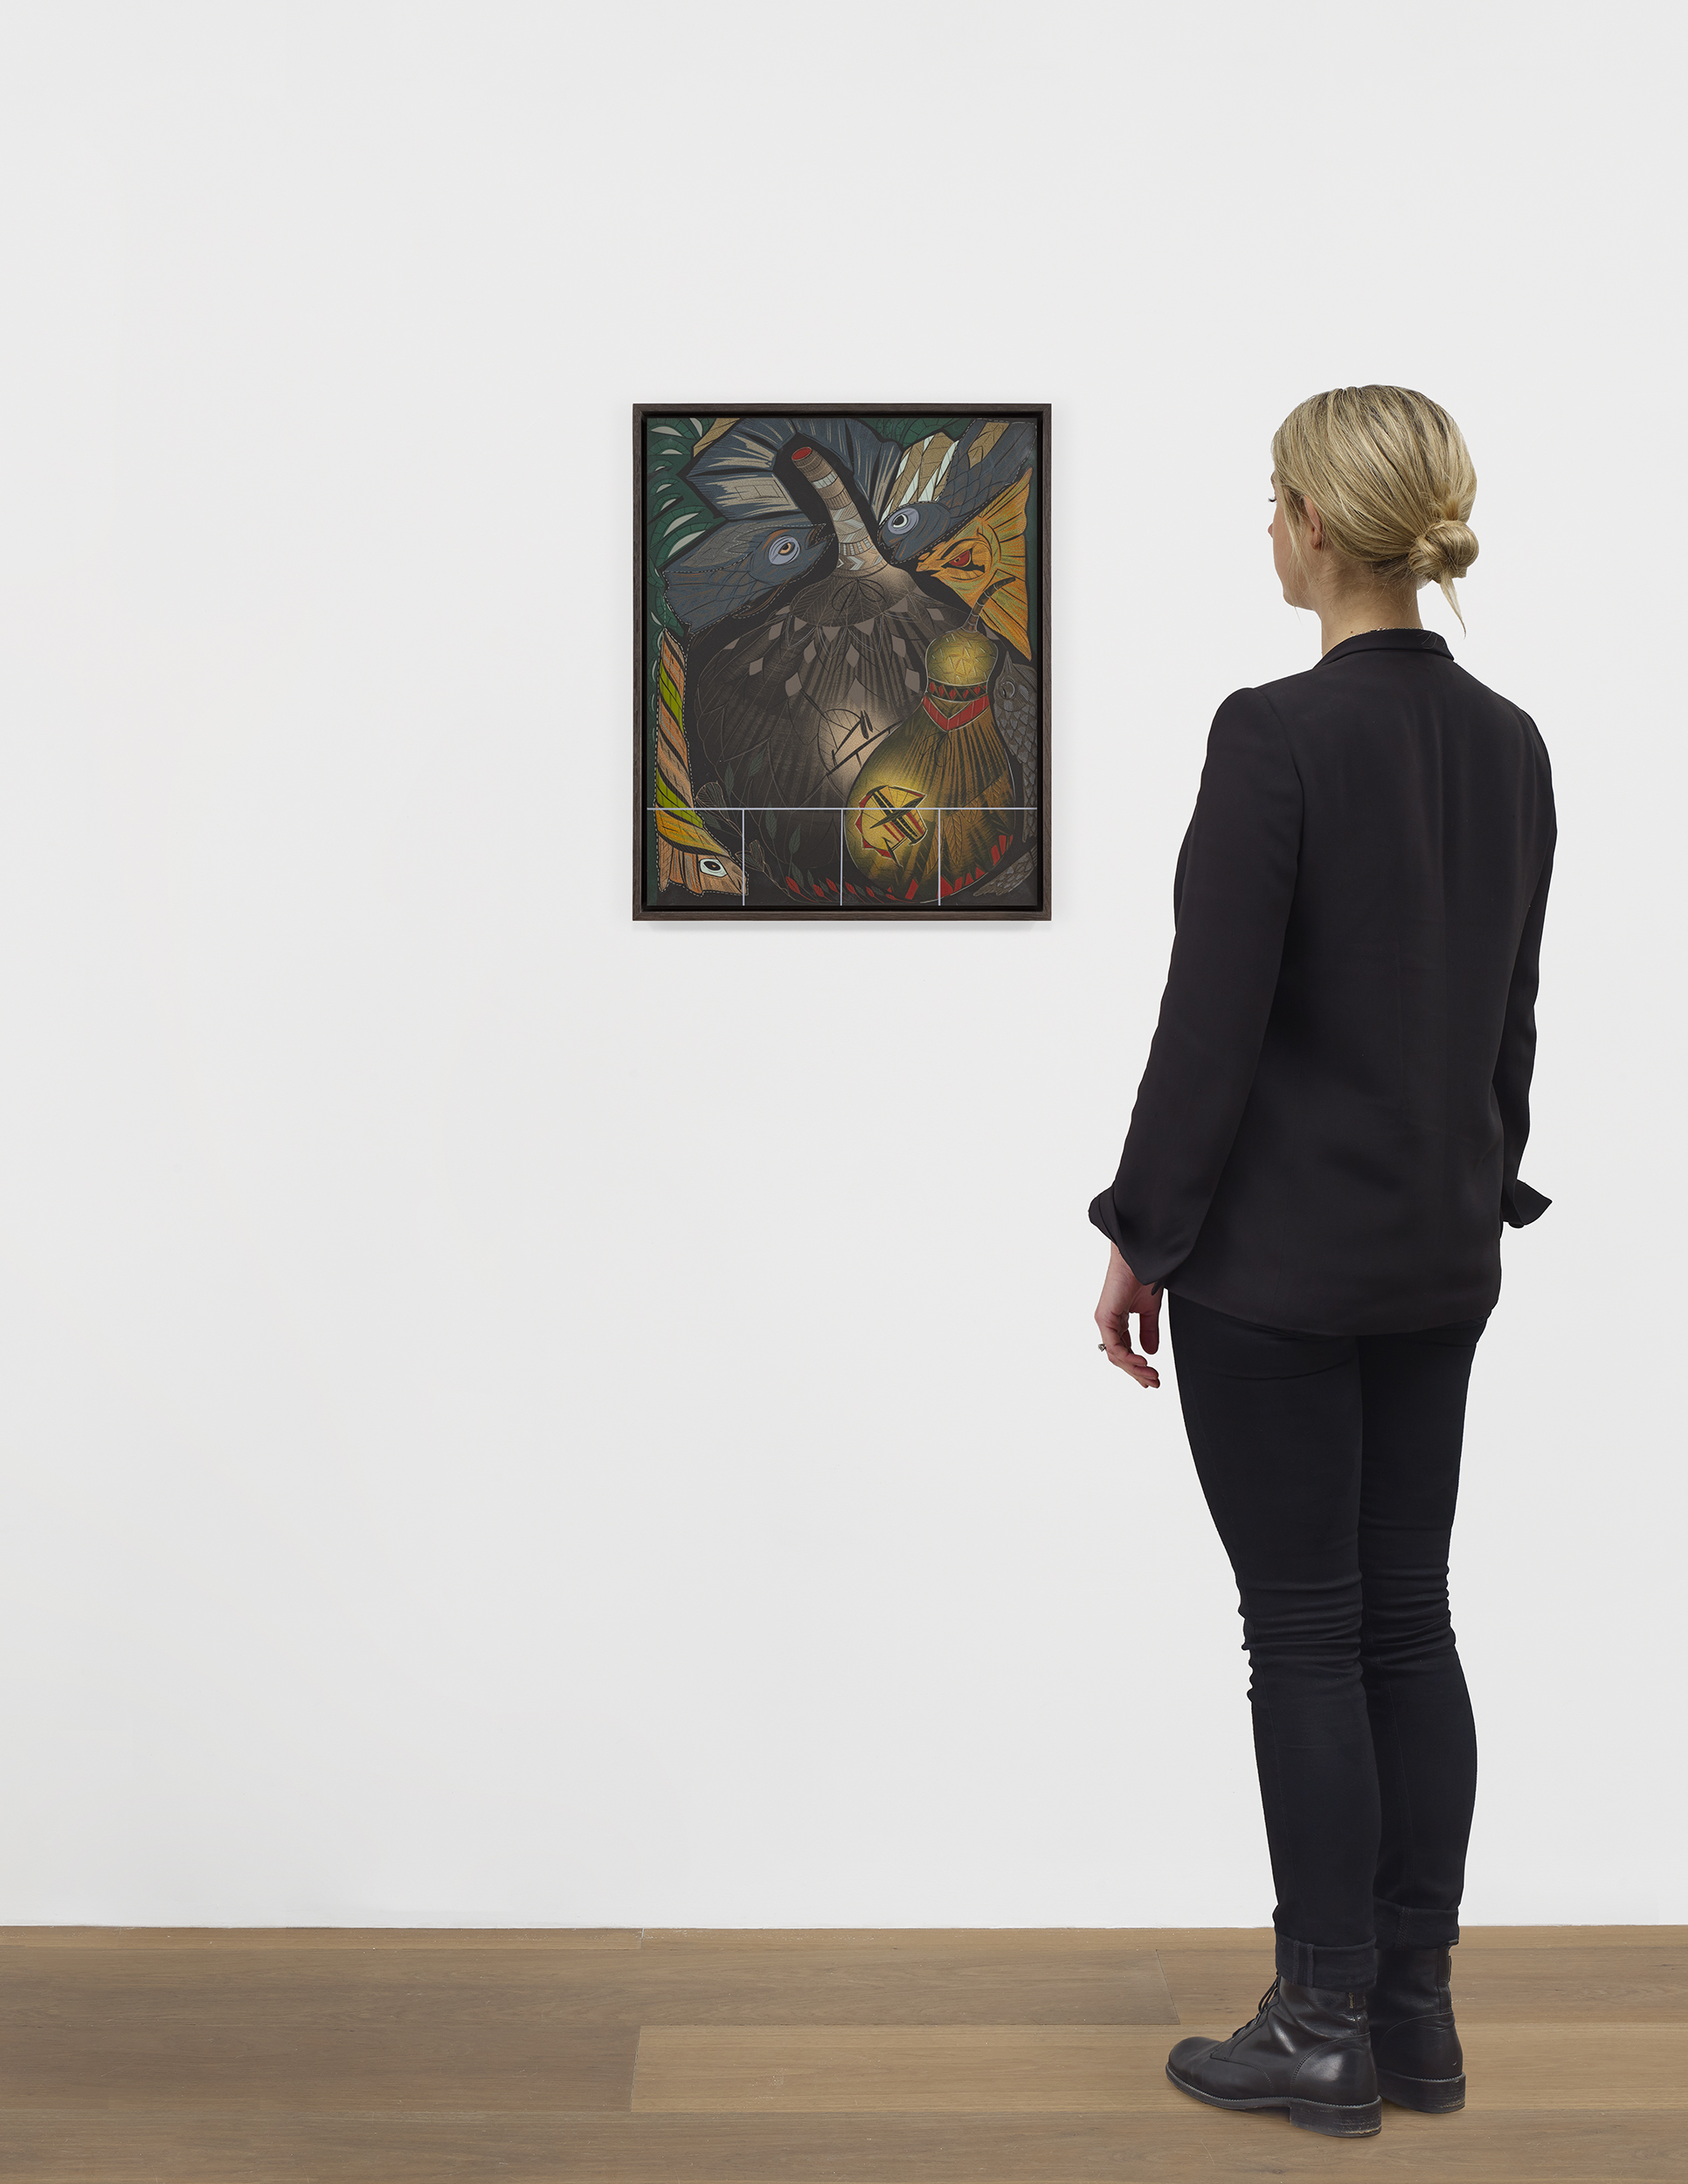 Scale view of Lari Pittman's painting Diorama 12